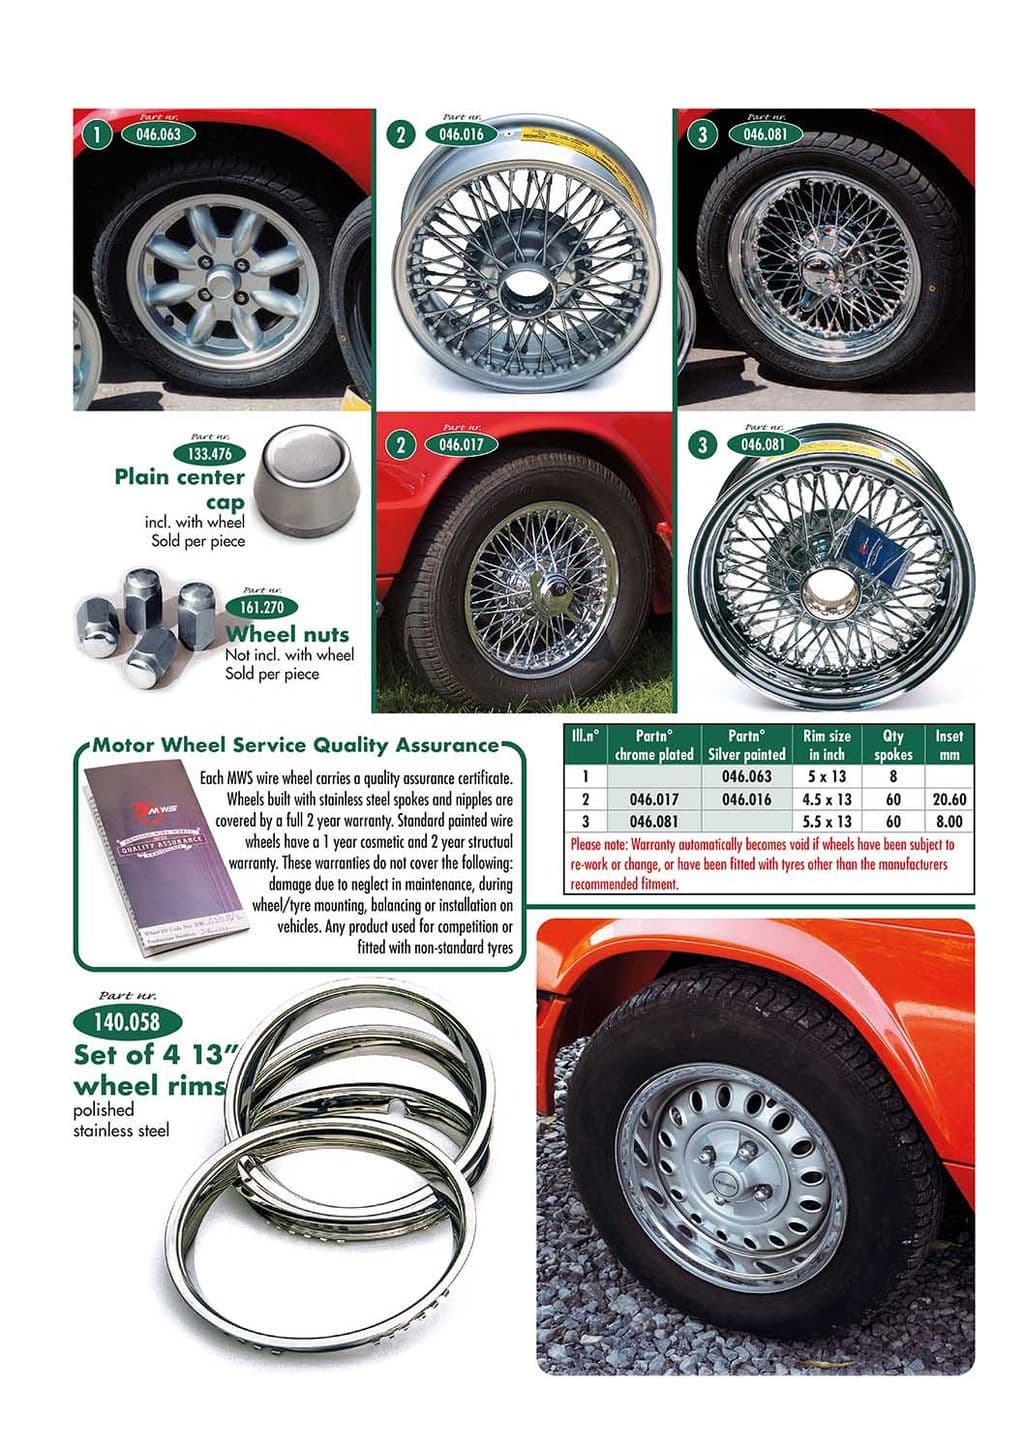 Wheels & accessories - Stahlräder & Beschläge - Auto räder, Aufhängung & Lenkung - Triumph GT6 MKI-III 1966-1973 - Wheels & accessories - 1